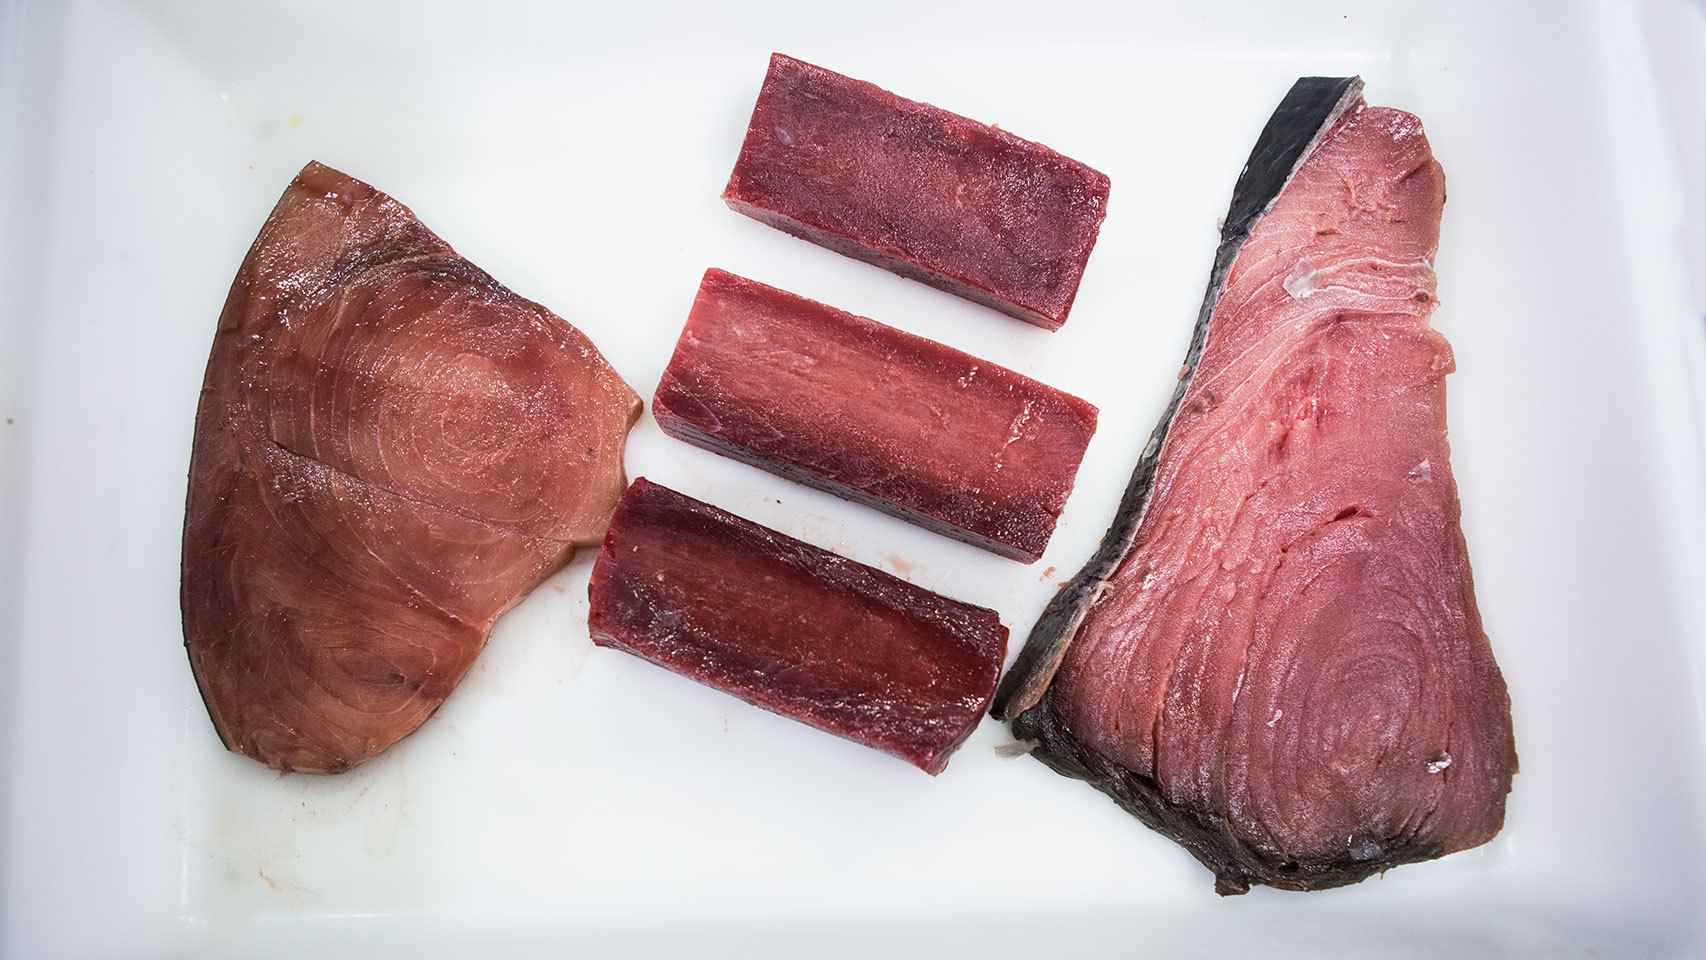 A la izquierda, un filete teñido con zumo de remolacha. En el centro, tres trozos de atún rojo de almadraba. A la derecha, un chuletón de atún rojo comprado en un mercado de Madrid.